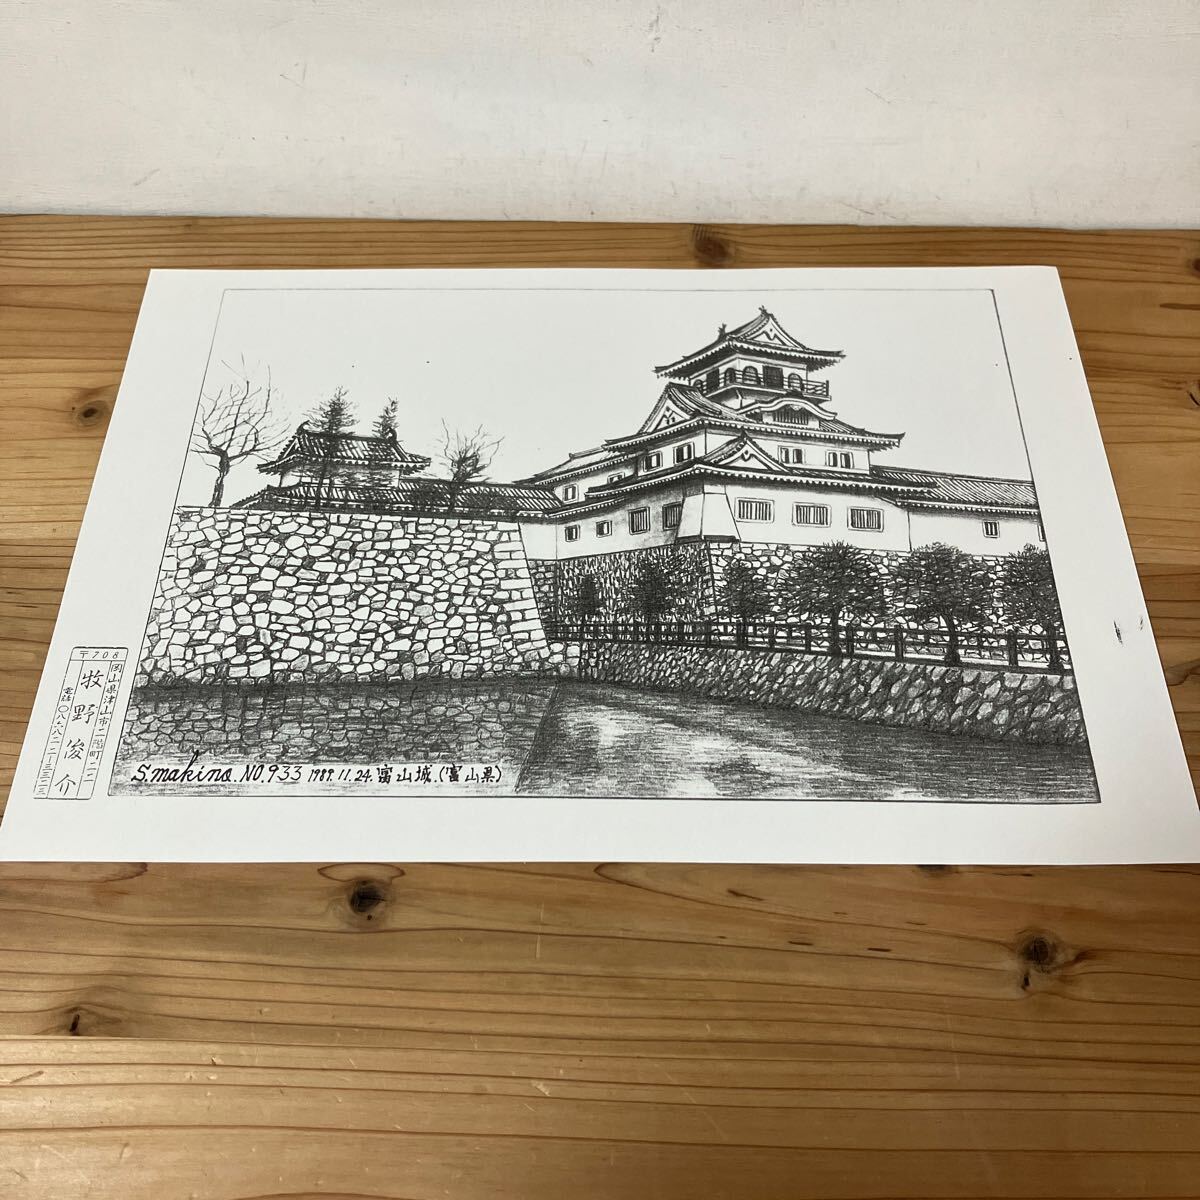 माओ H0305 [माकिनो शुनसुके, तोयामा कैसल नं. 933, मुद्रित पेंसिल ड्राइंग] 1889, कलाकृति, चित्रकारी, पेंसिल ड्राइंग, चारकोल ड्राइंग